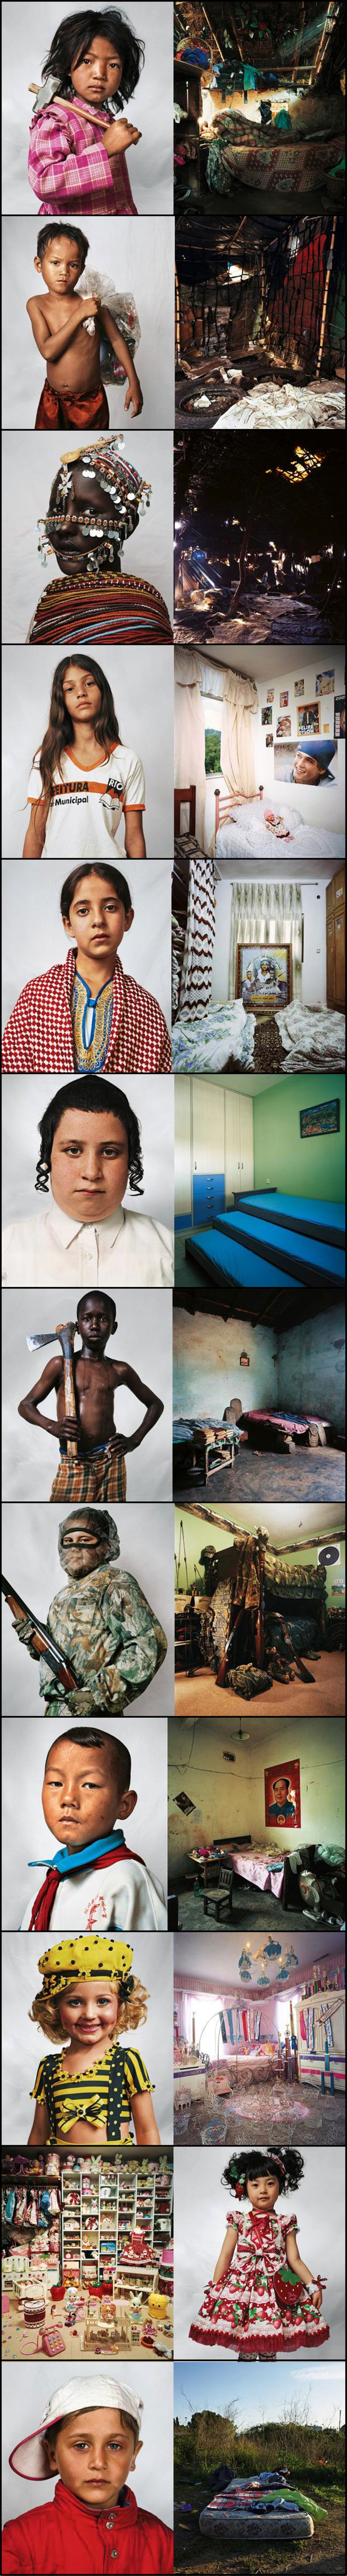 Extraits du reportage photographique 'Where Children Sleep' ( toutes les informations: http://golem13.fr/where-children-sleep-les-chambres-denfants-a-travers-le-monde-par-james-mollison/ )